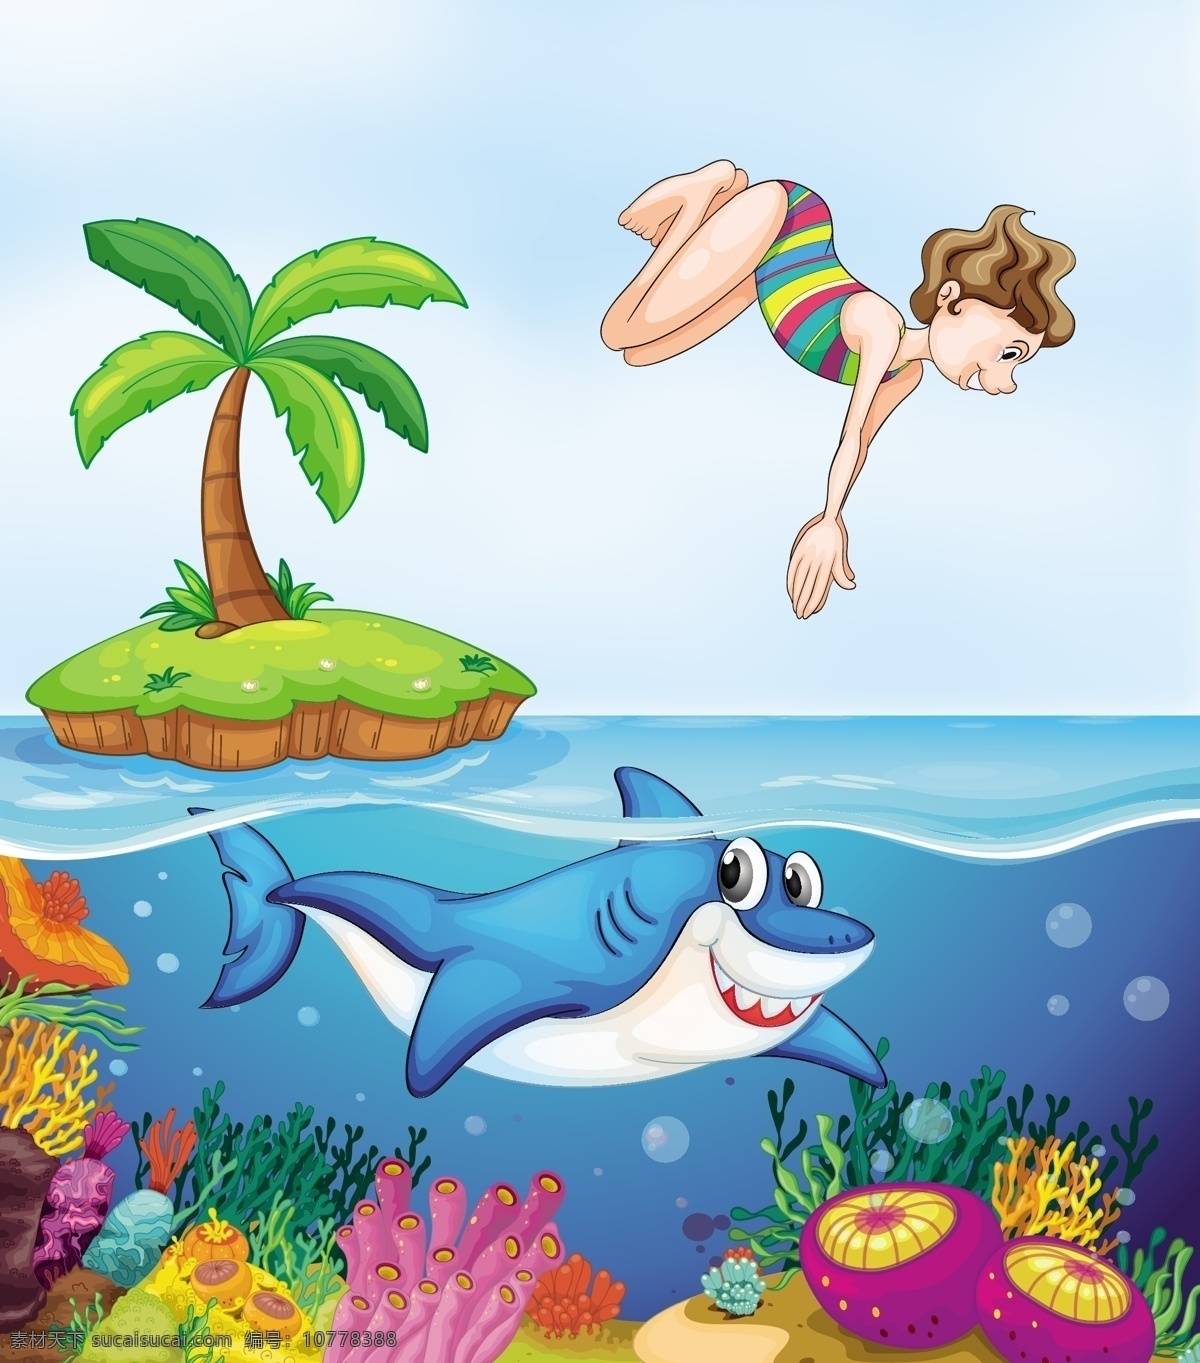 卡通海底 可爱 卡通 背景 人物 动物 海洋 跳水 鲨鱼 椰树 树叶 水泡 气泡 水草 珊瑚 海底 自然风景 自然景观 矢量